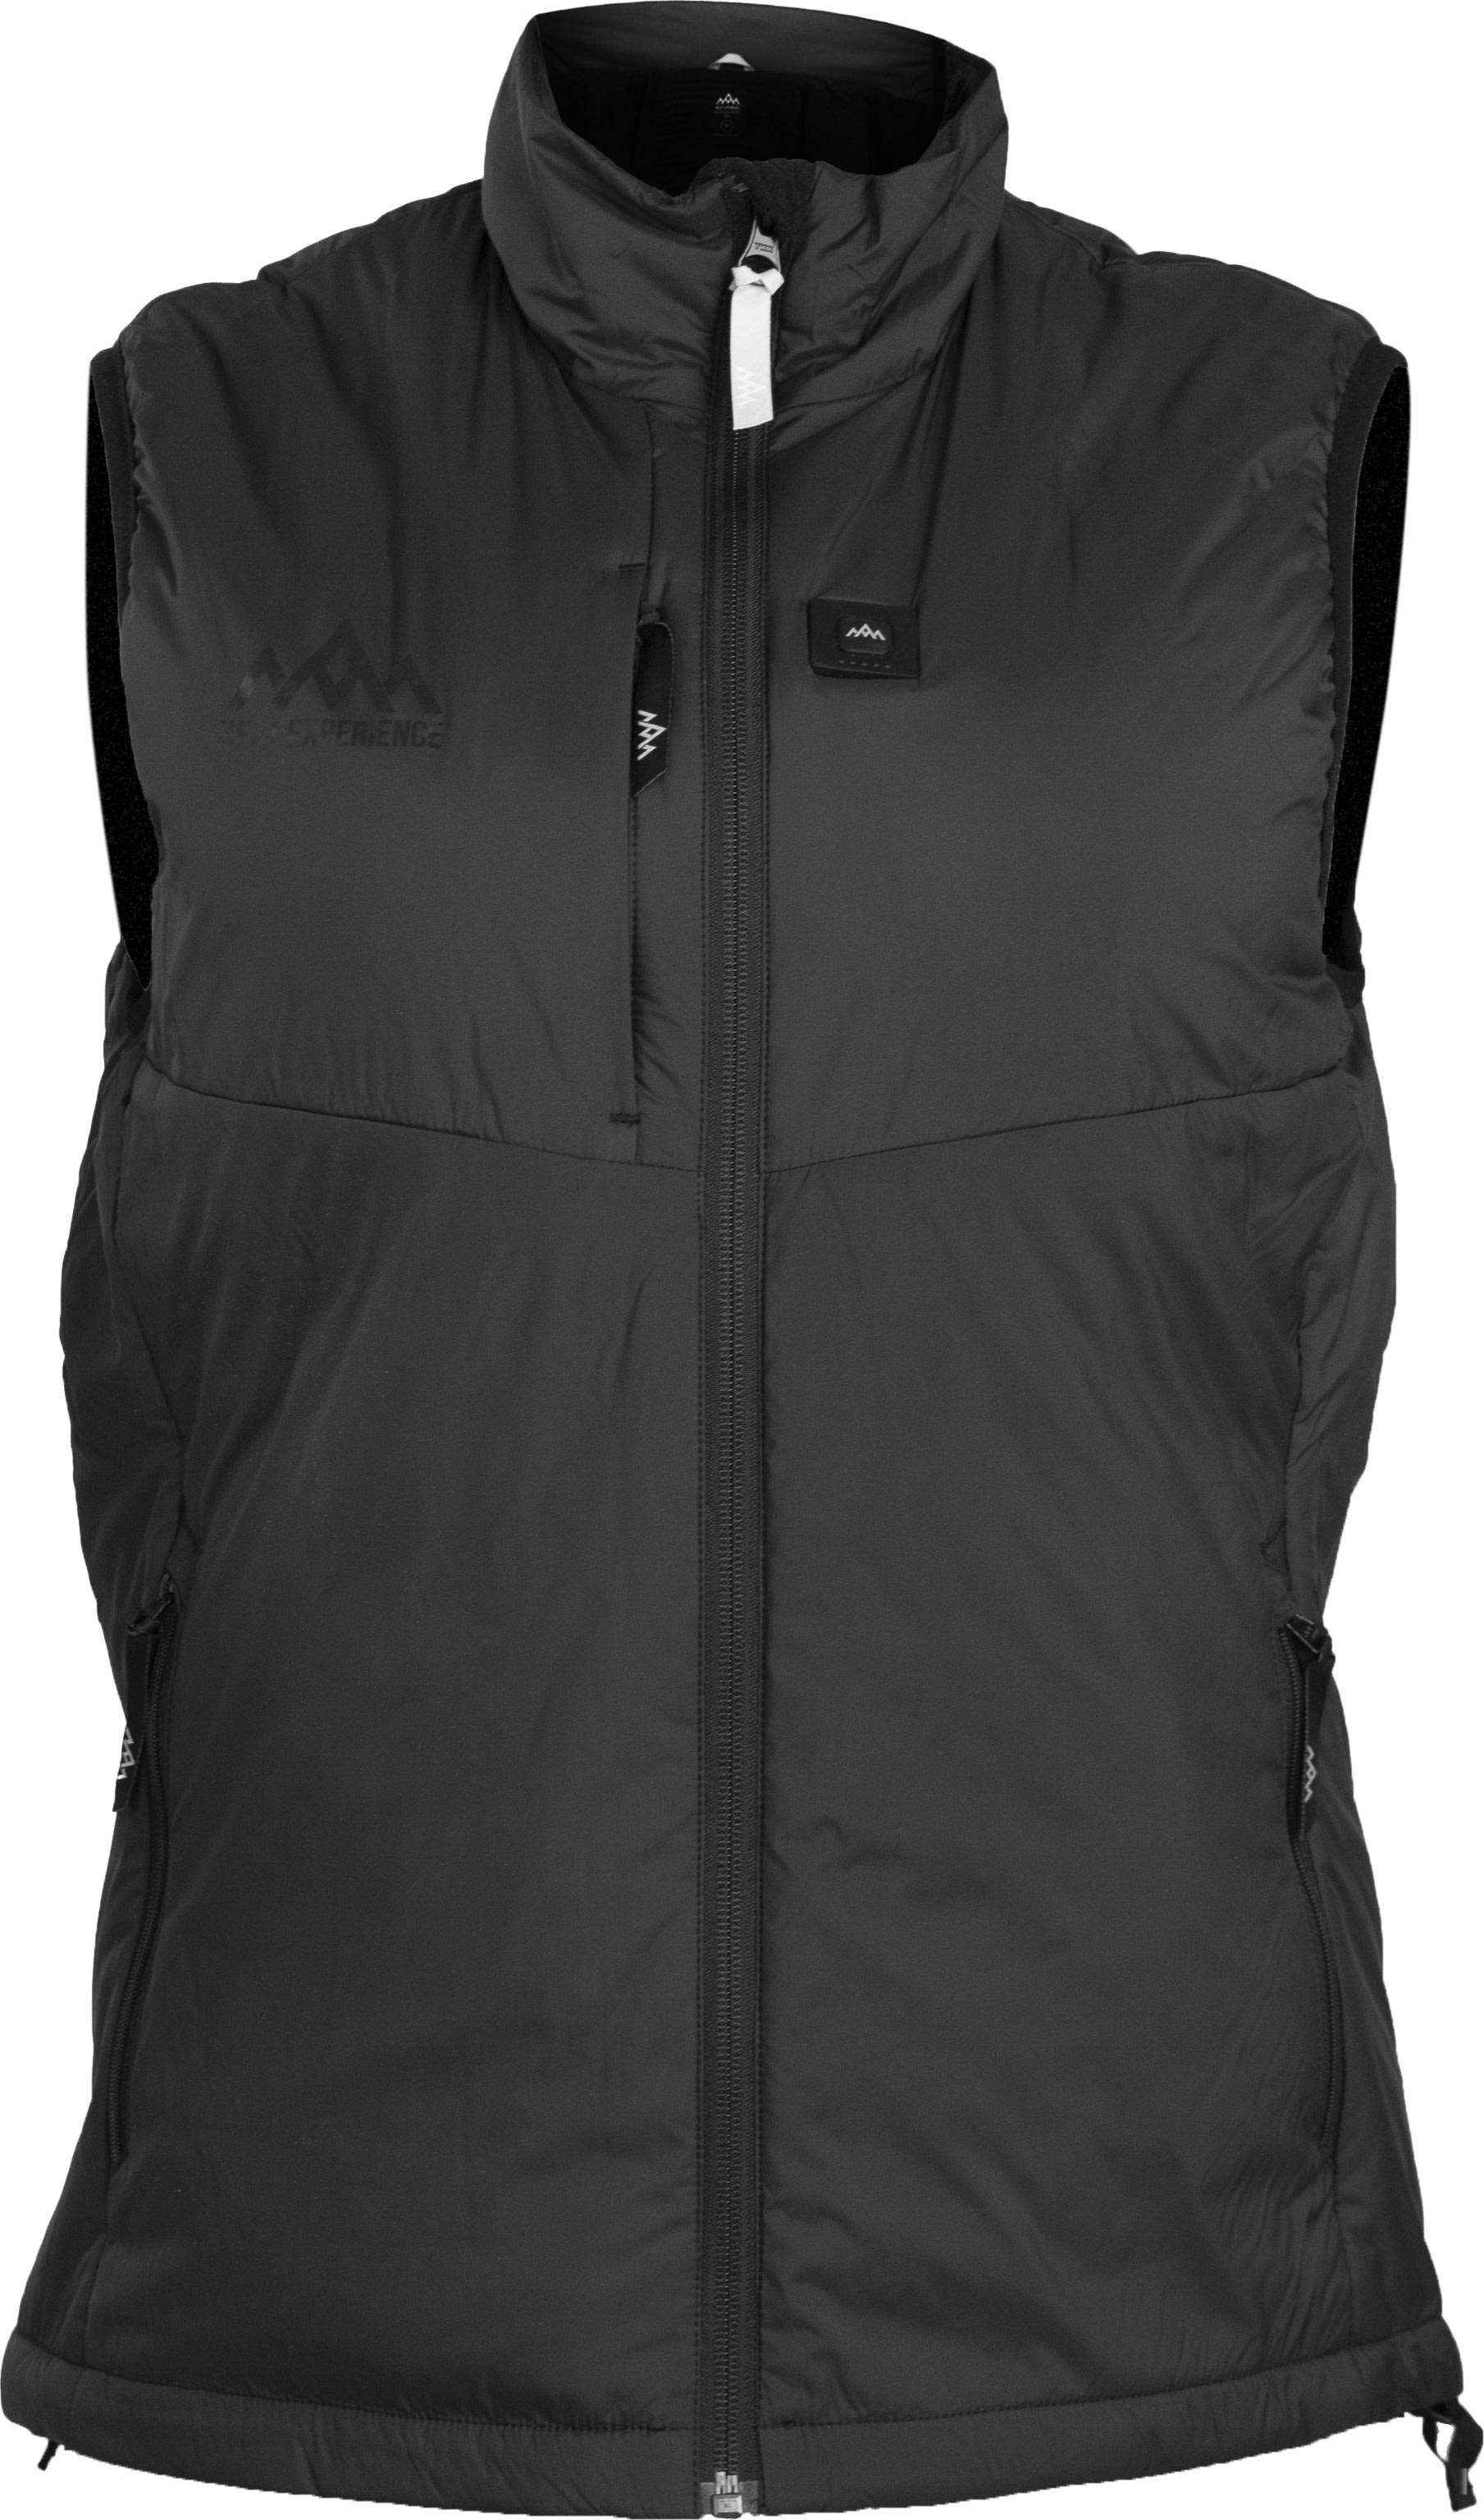 Heat Experience Women's Heated Outdoor Vest Black